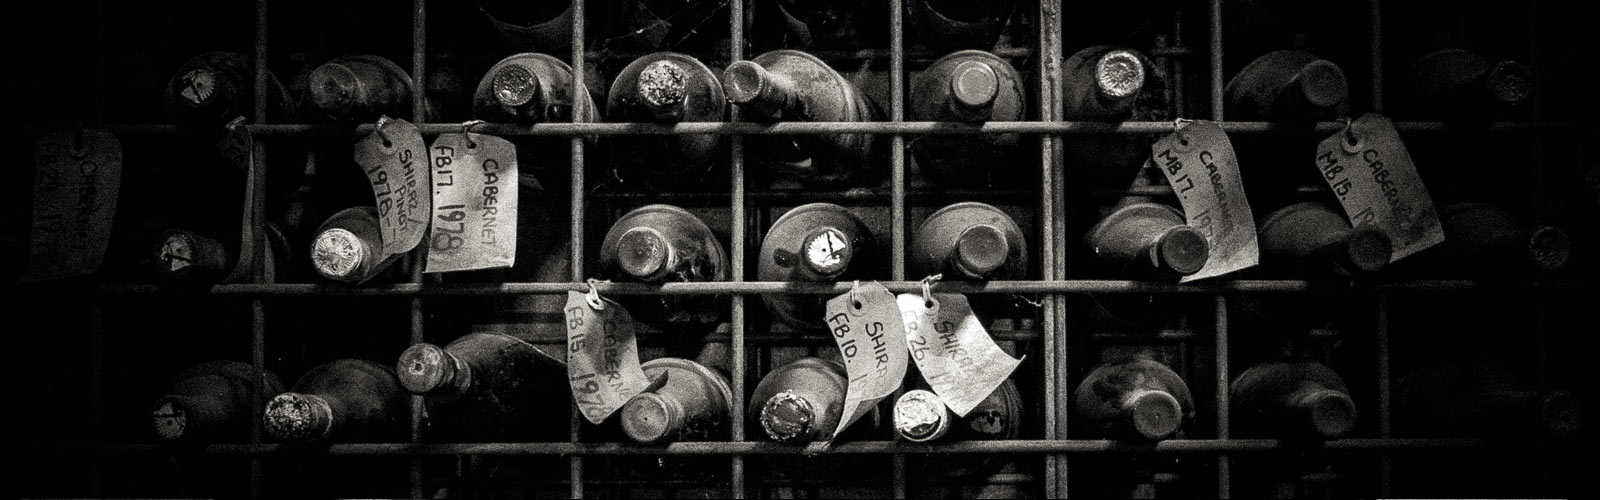 Huntington Estate Old Bottles